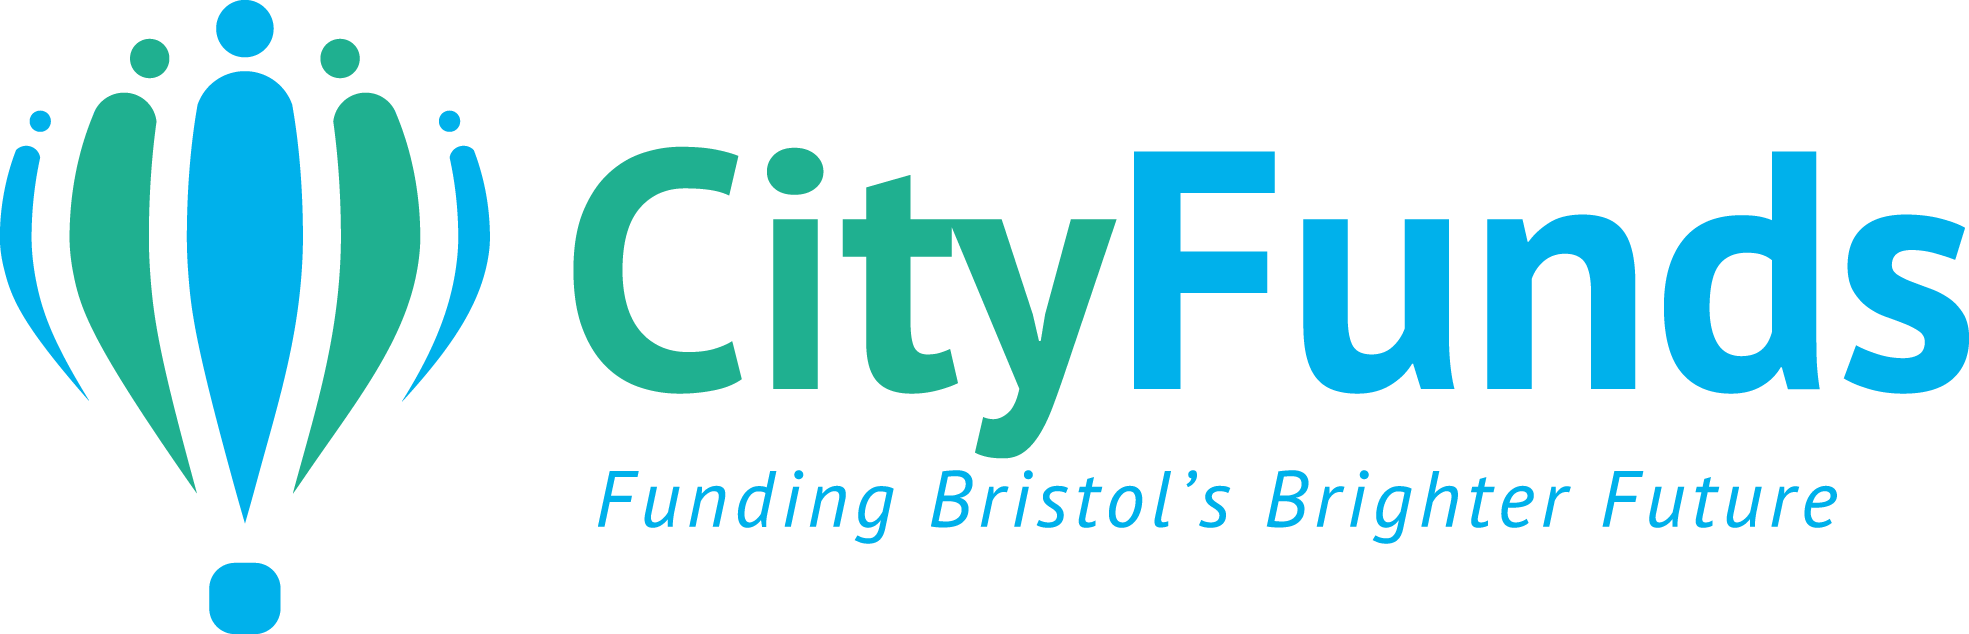 Quartet City Funds Logo